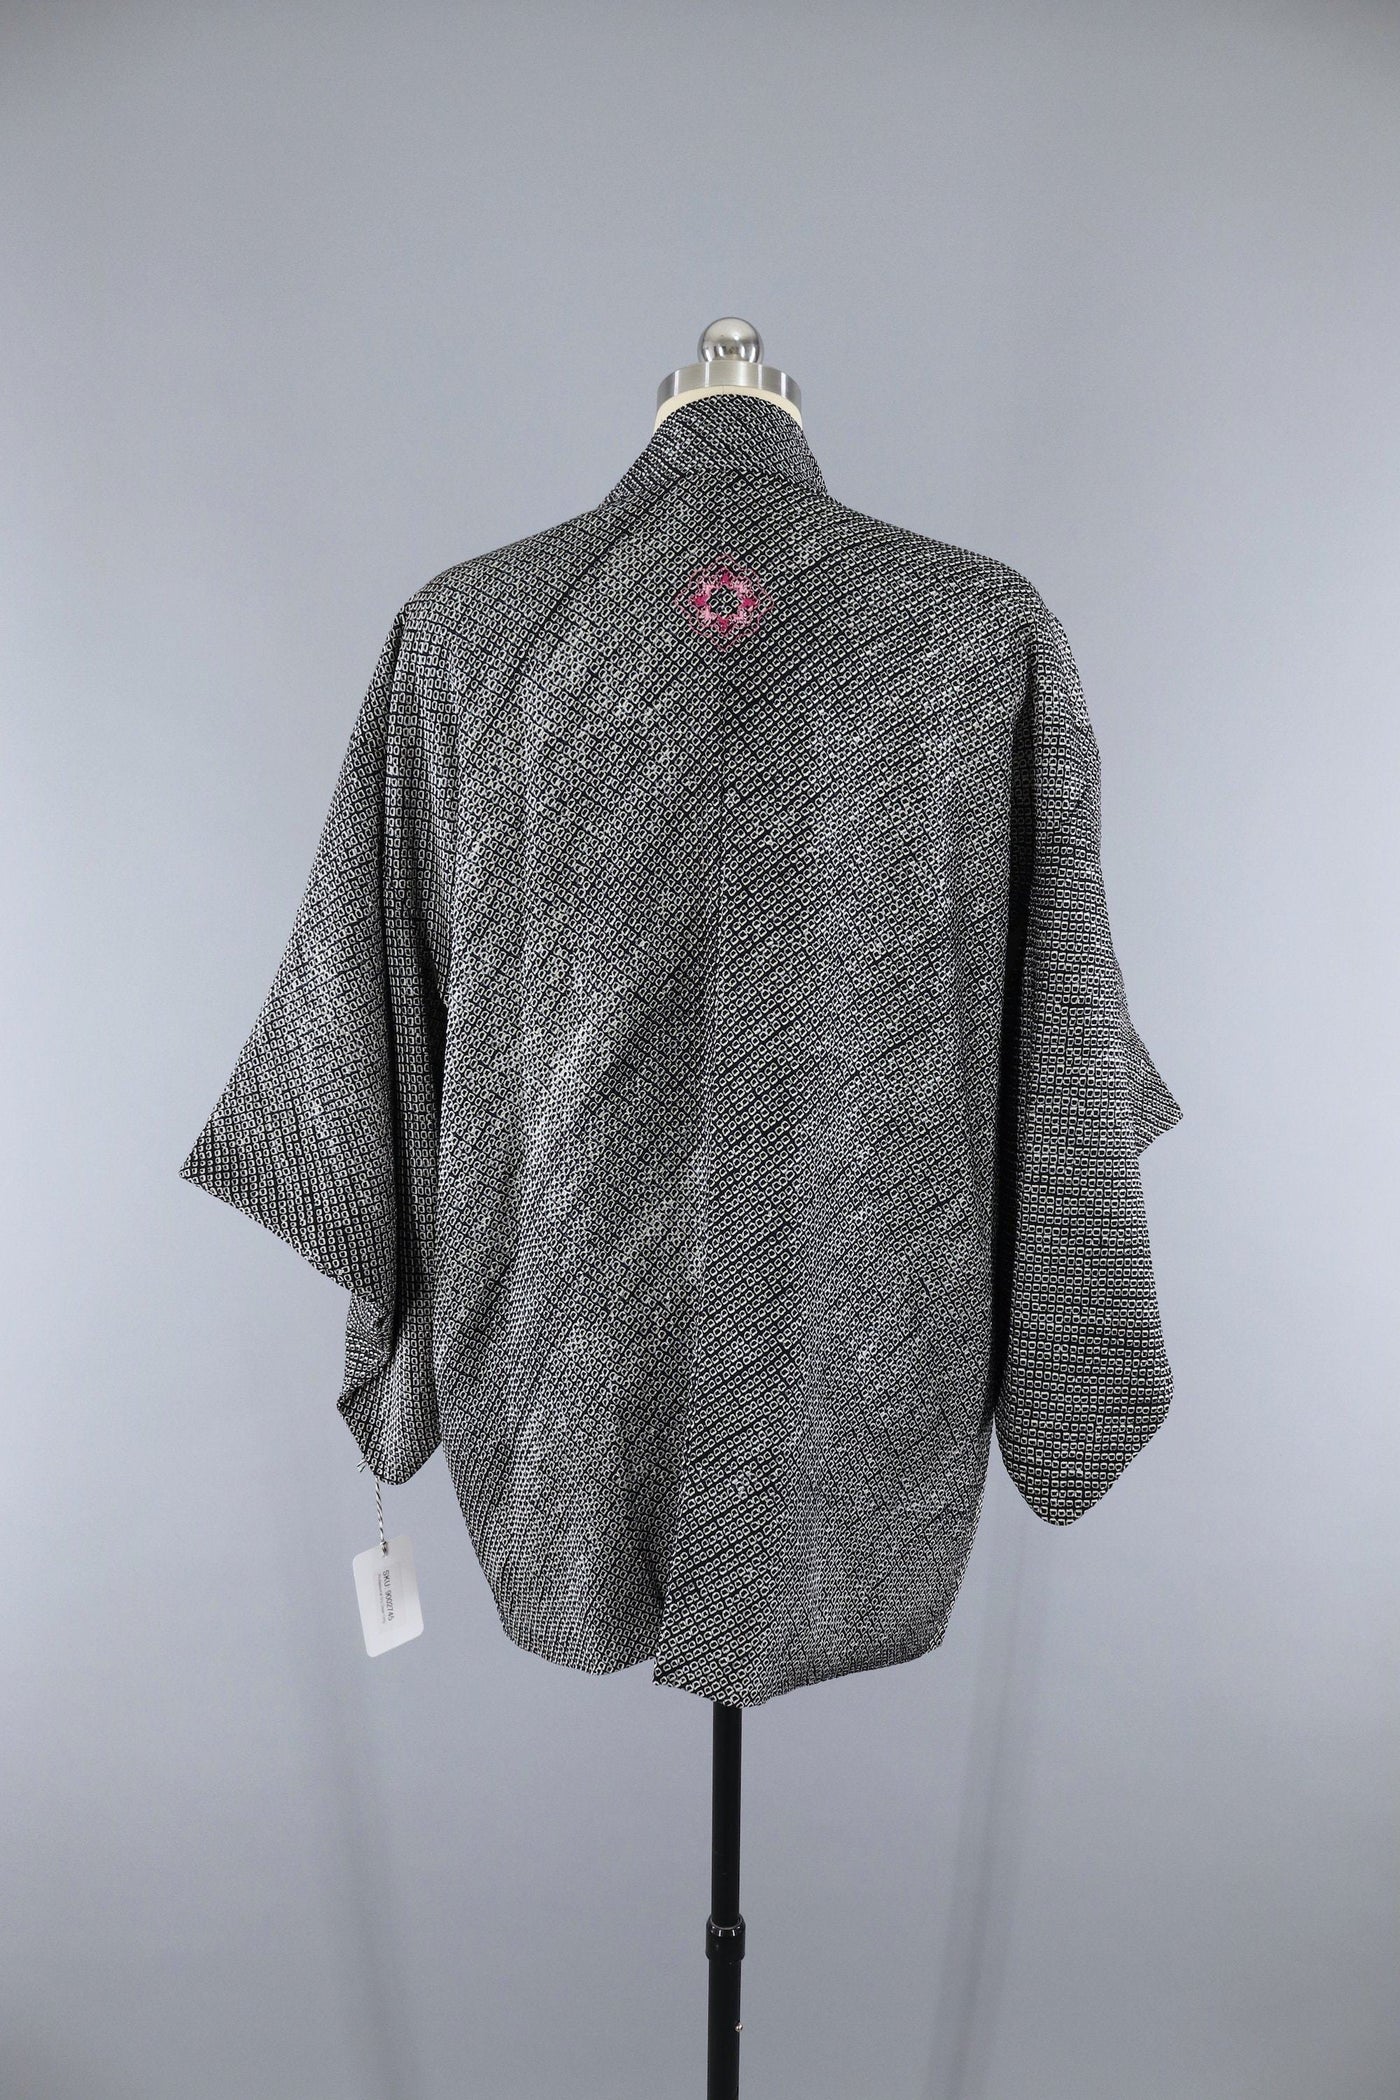 1960s Vintage Silk Haori Kimono Jacket Cardigan / Black & White Shibori Dyed - ThisBlueBird